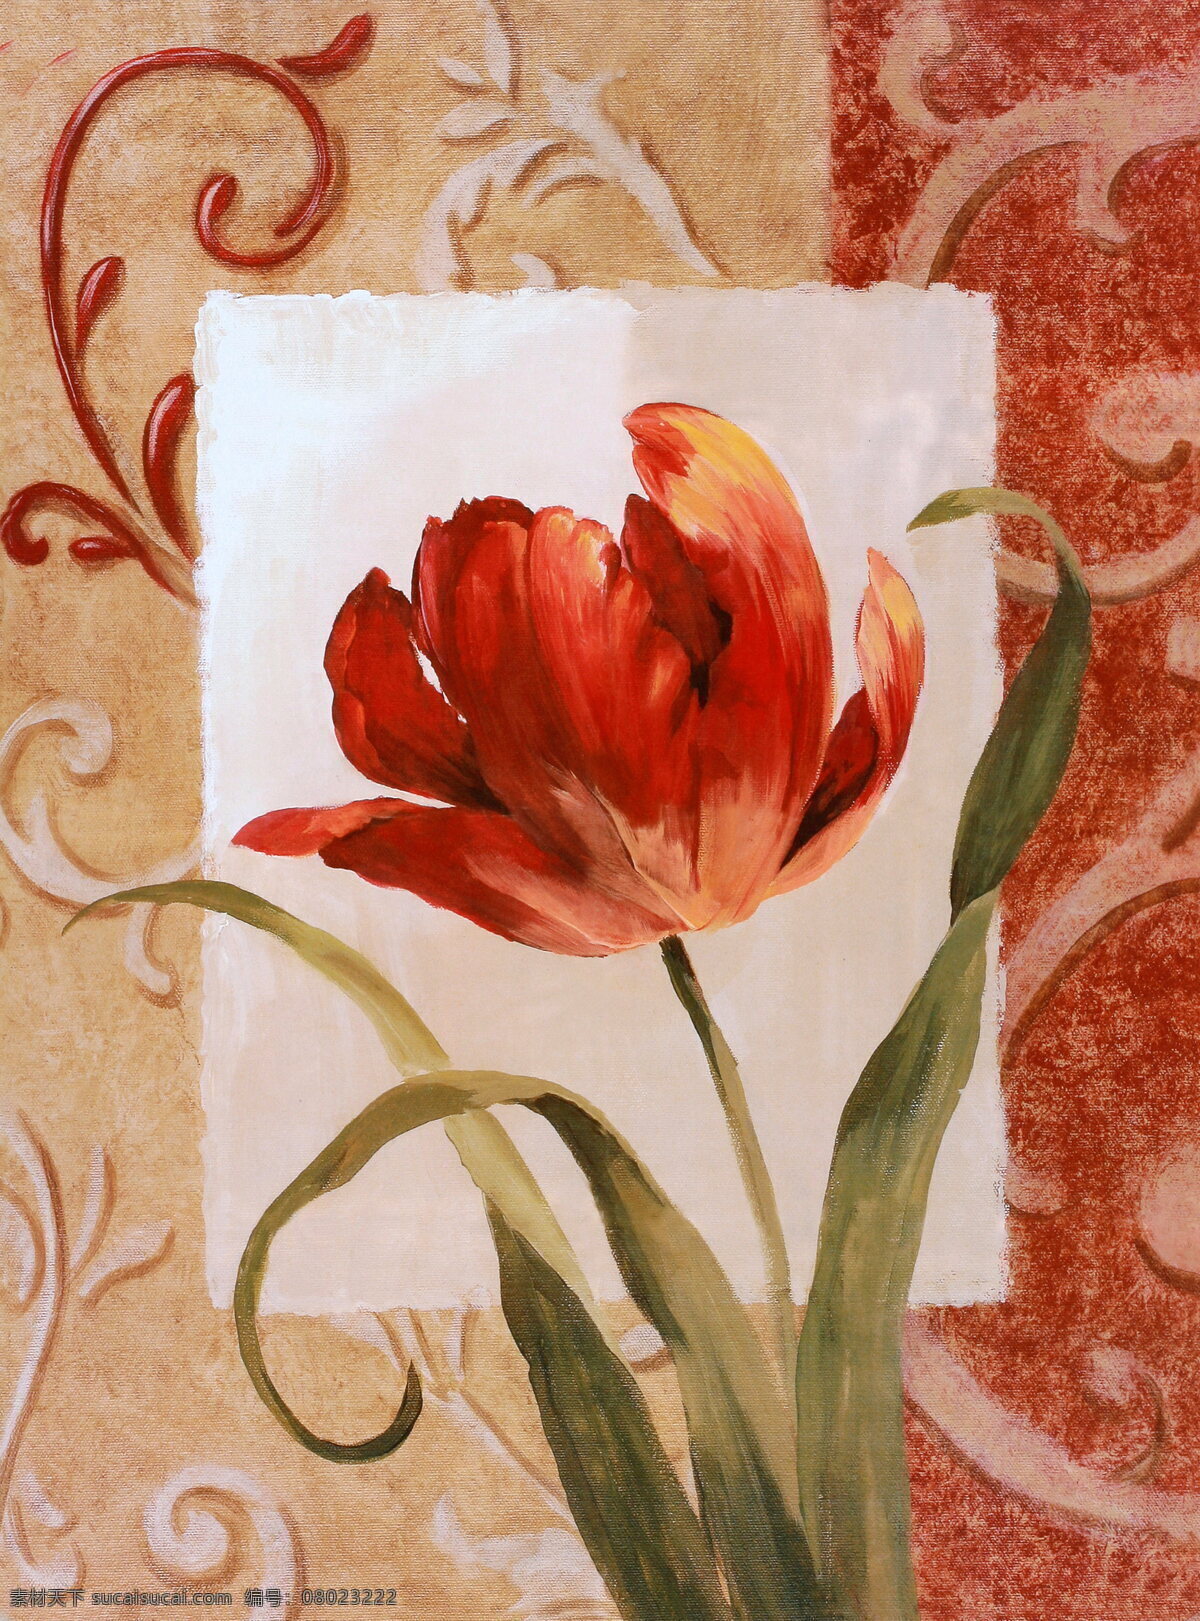 复古鲜花油画 鲜花 花朵 花卉 油画 绘画 艺术 写生 水墨 花草 画 水墨画 风景 其他艺术 文化艺术 红色